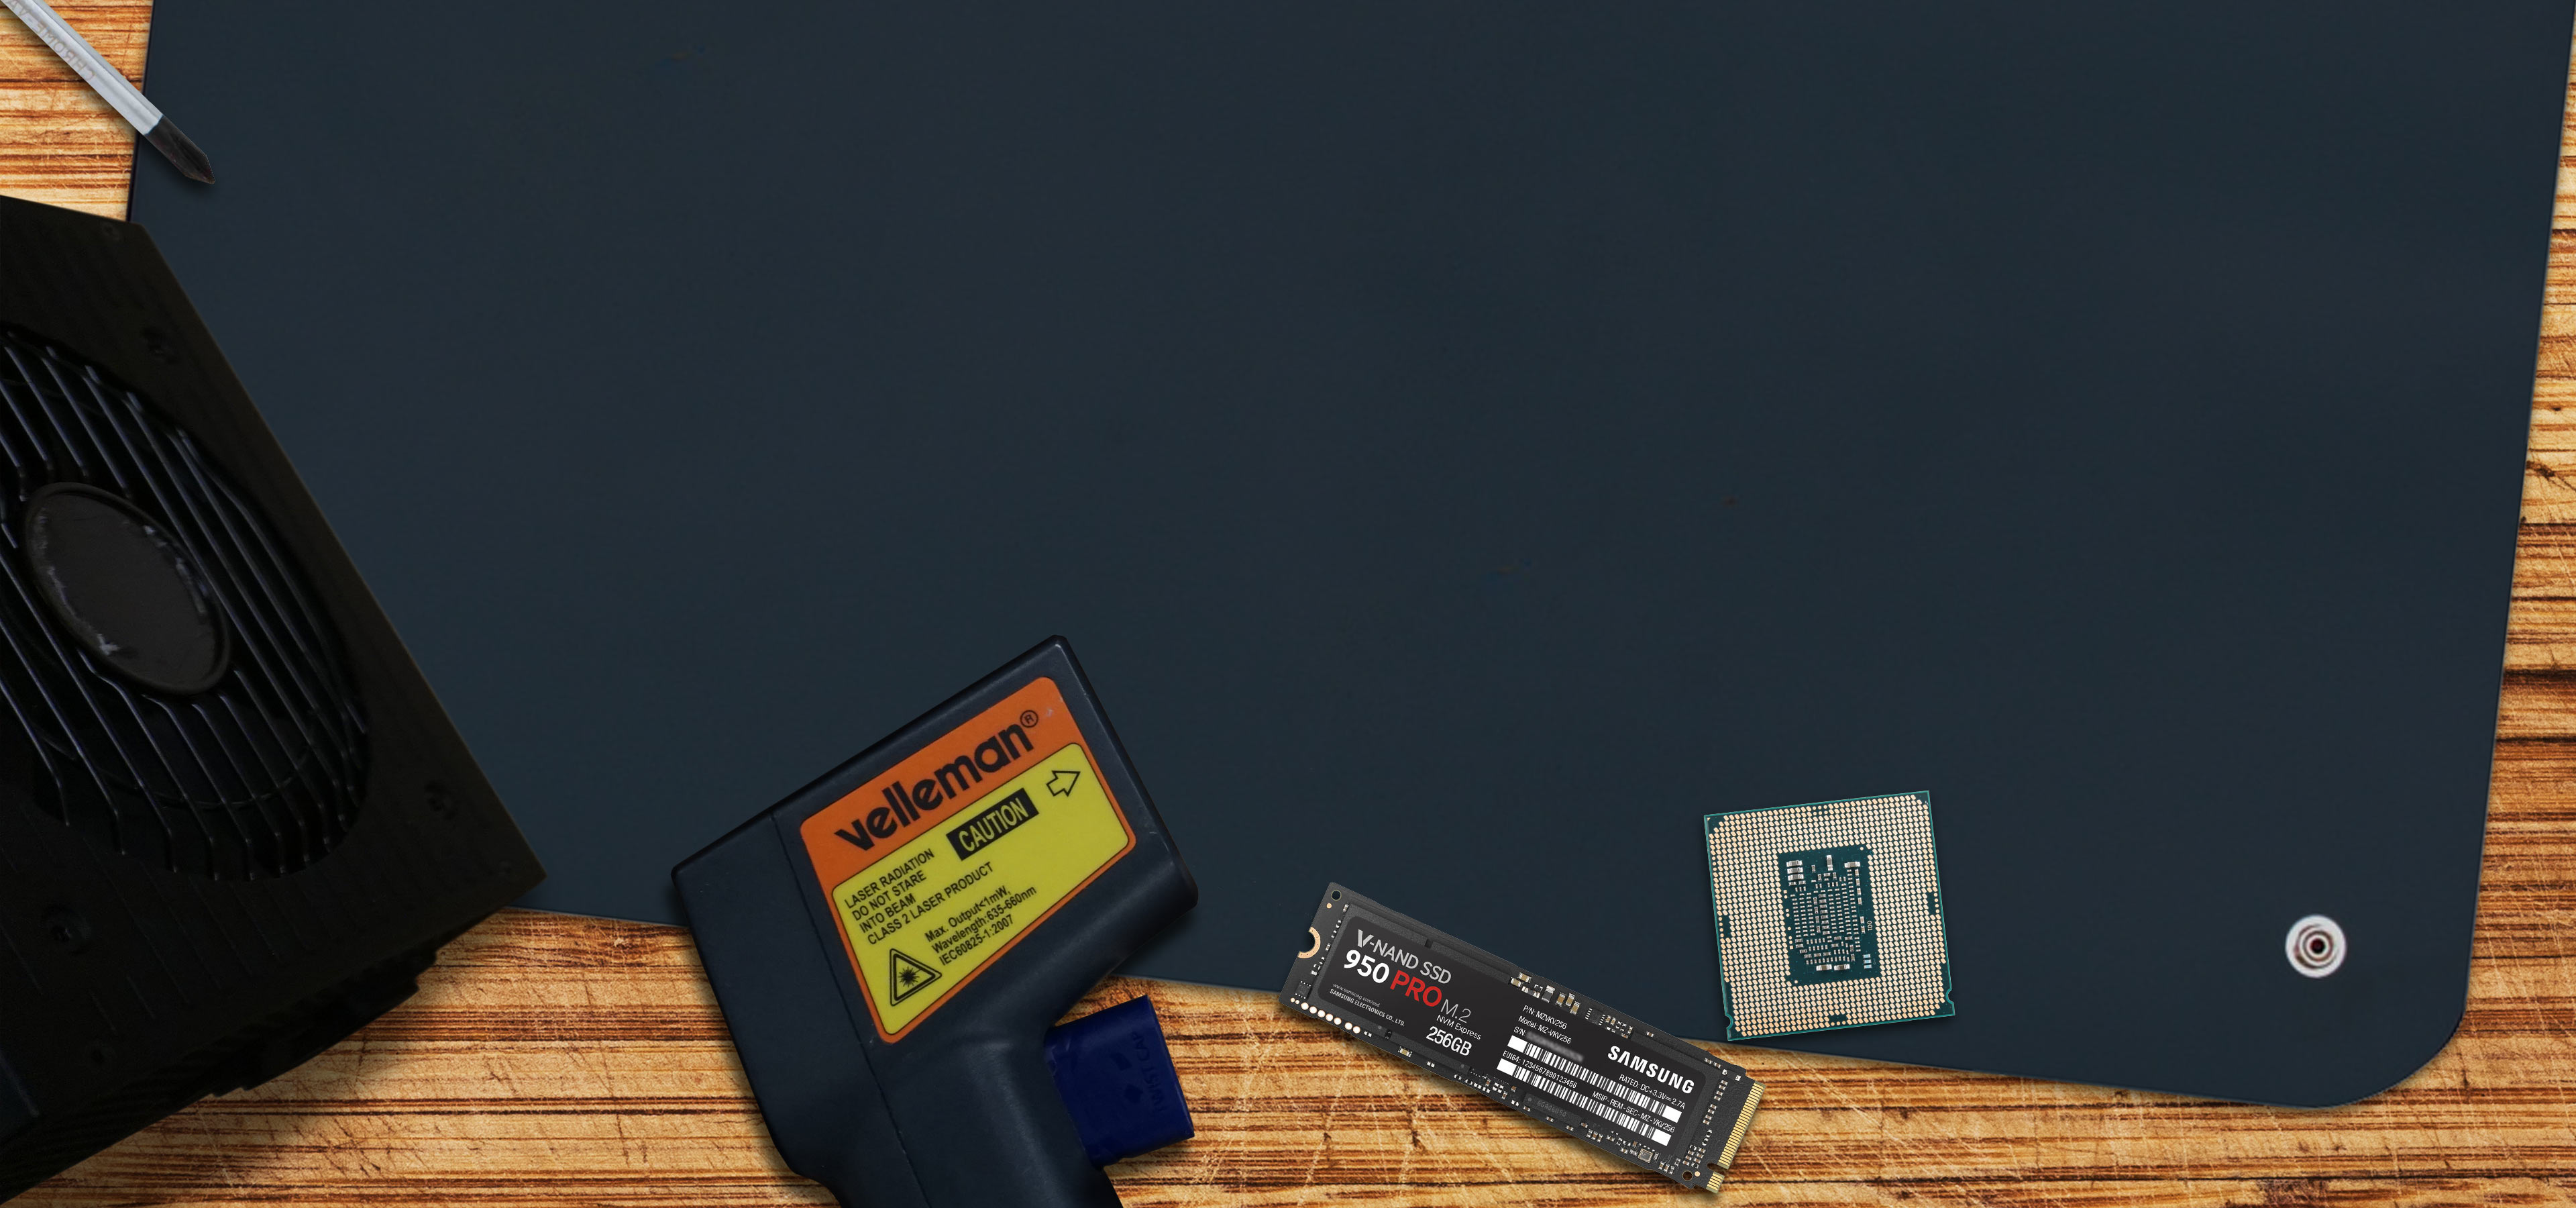 MSI B250 PC MATE 7th/6th Gen USB3 ATX Motherboard - Black (Intel Core i3/i5/i7 Processor, LGA 1151, Dual Channel DDR4, USB 3.1, PCI-E 3.0, PCI-E x1, Sata 6 GB)